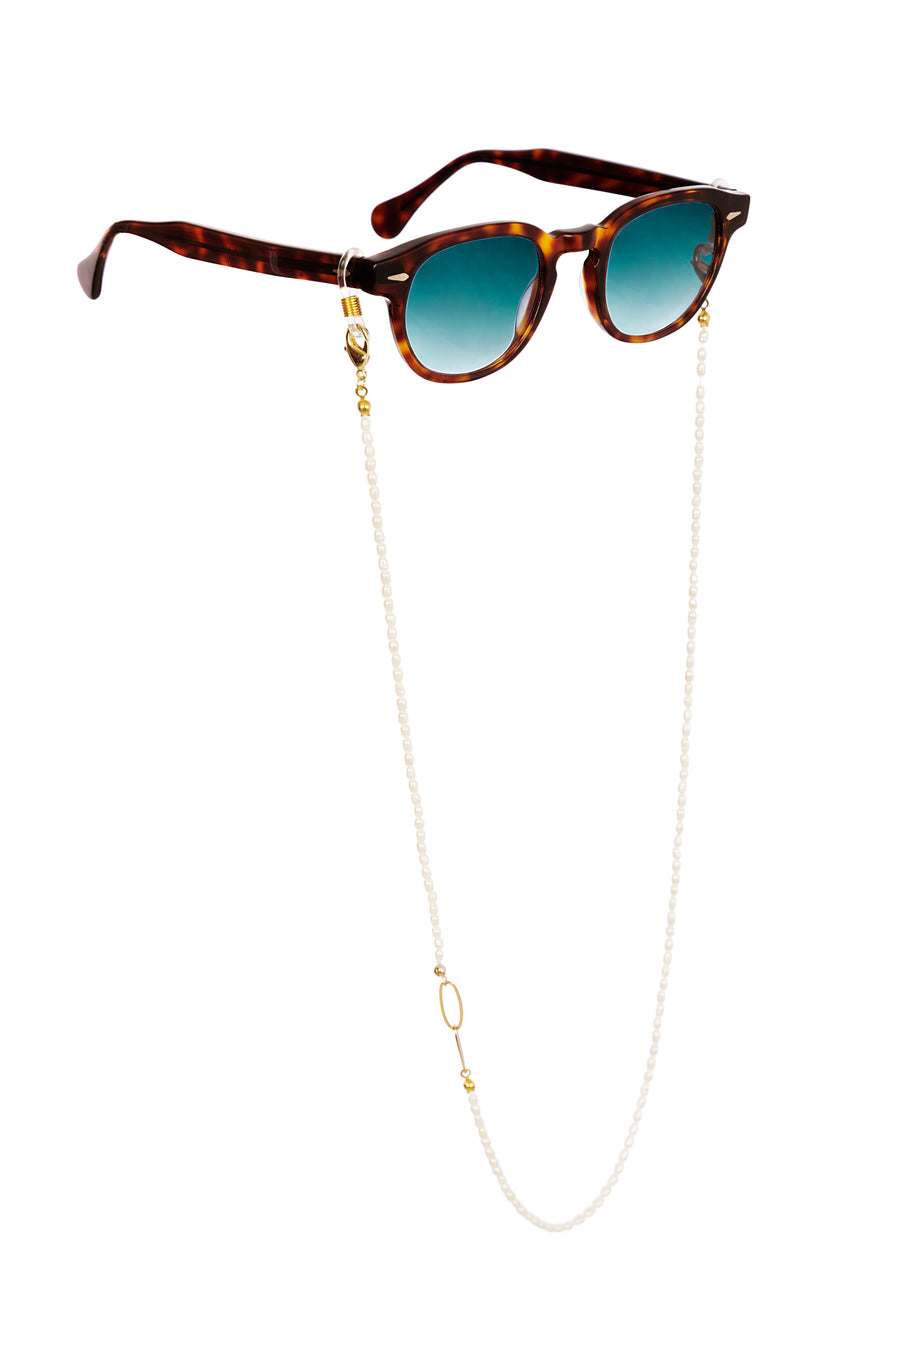 Libra - Pearls Sunglasses Chain